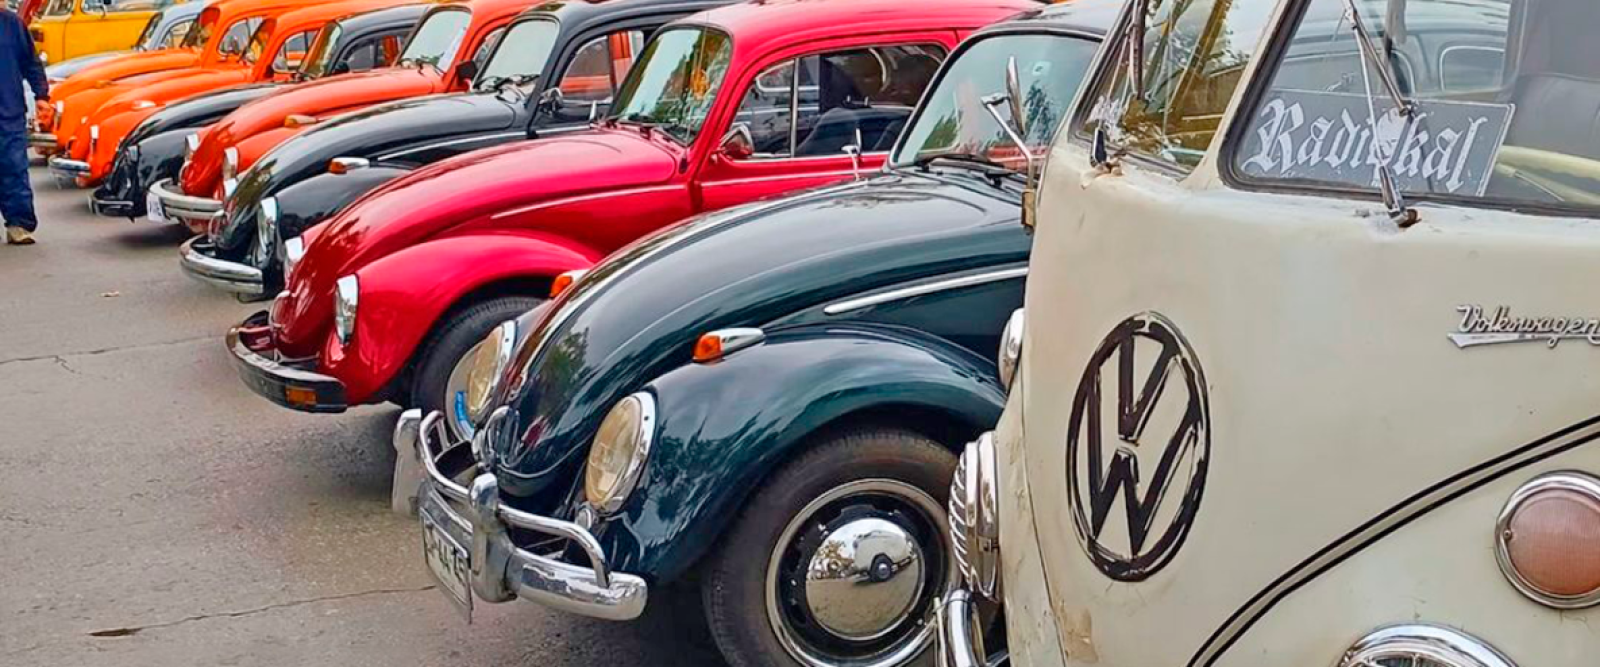 Exhibición y caravana de clásicos vehículos Volkswagen se toman Valparaíso